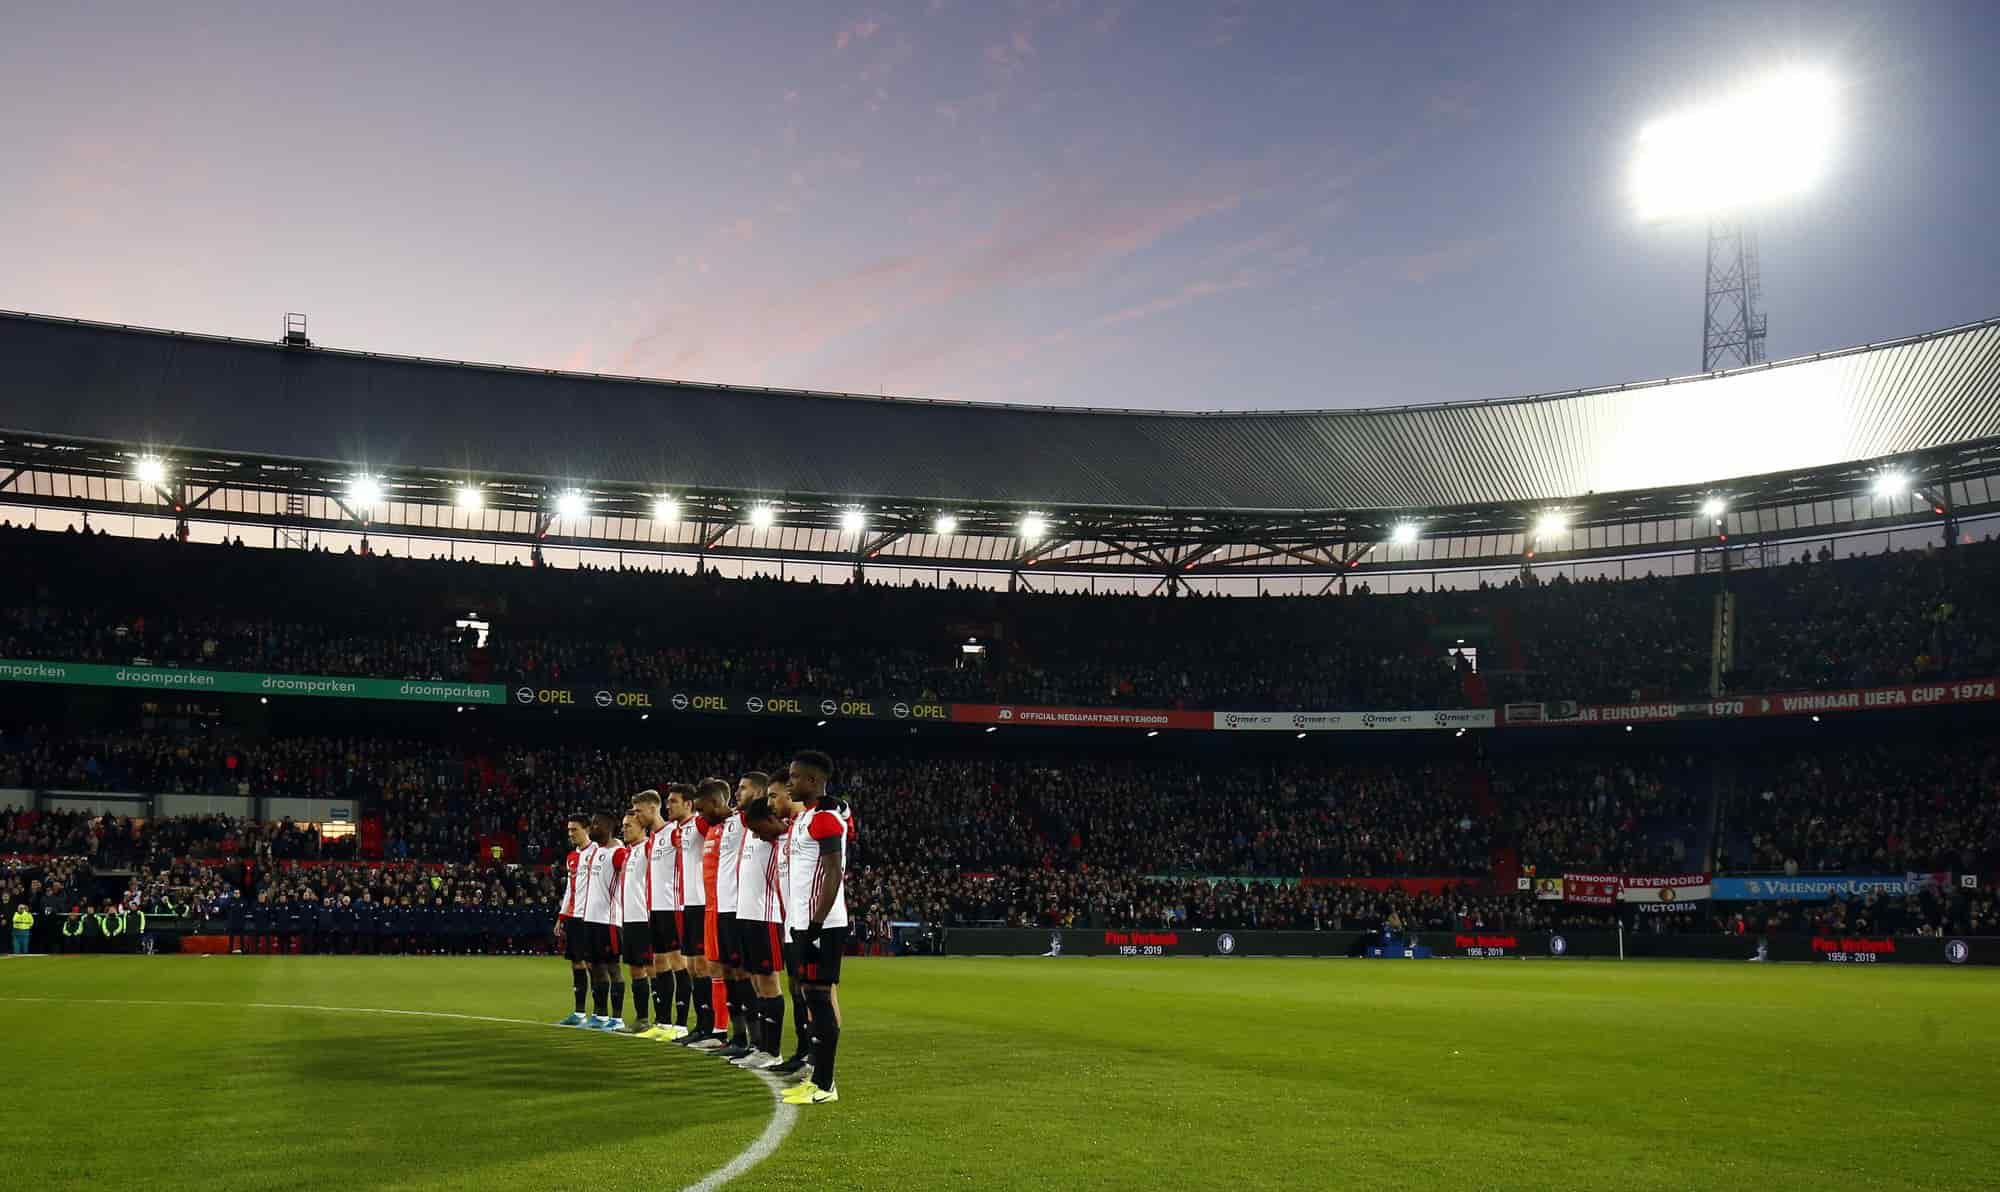 CAMPEONATO HOLANDÊS - Também a Federação Holandesa de Futebol optou por encerrar a temporada 2019/2020. A exemplo da Argentina, a Eredivisie (Campeonato Holandês) não terá campeão nem rebaixamento, e a final da Copa da Liga da Holanda, entre Feyenoord e Utrecht, também não será disputada.